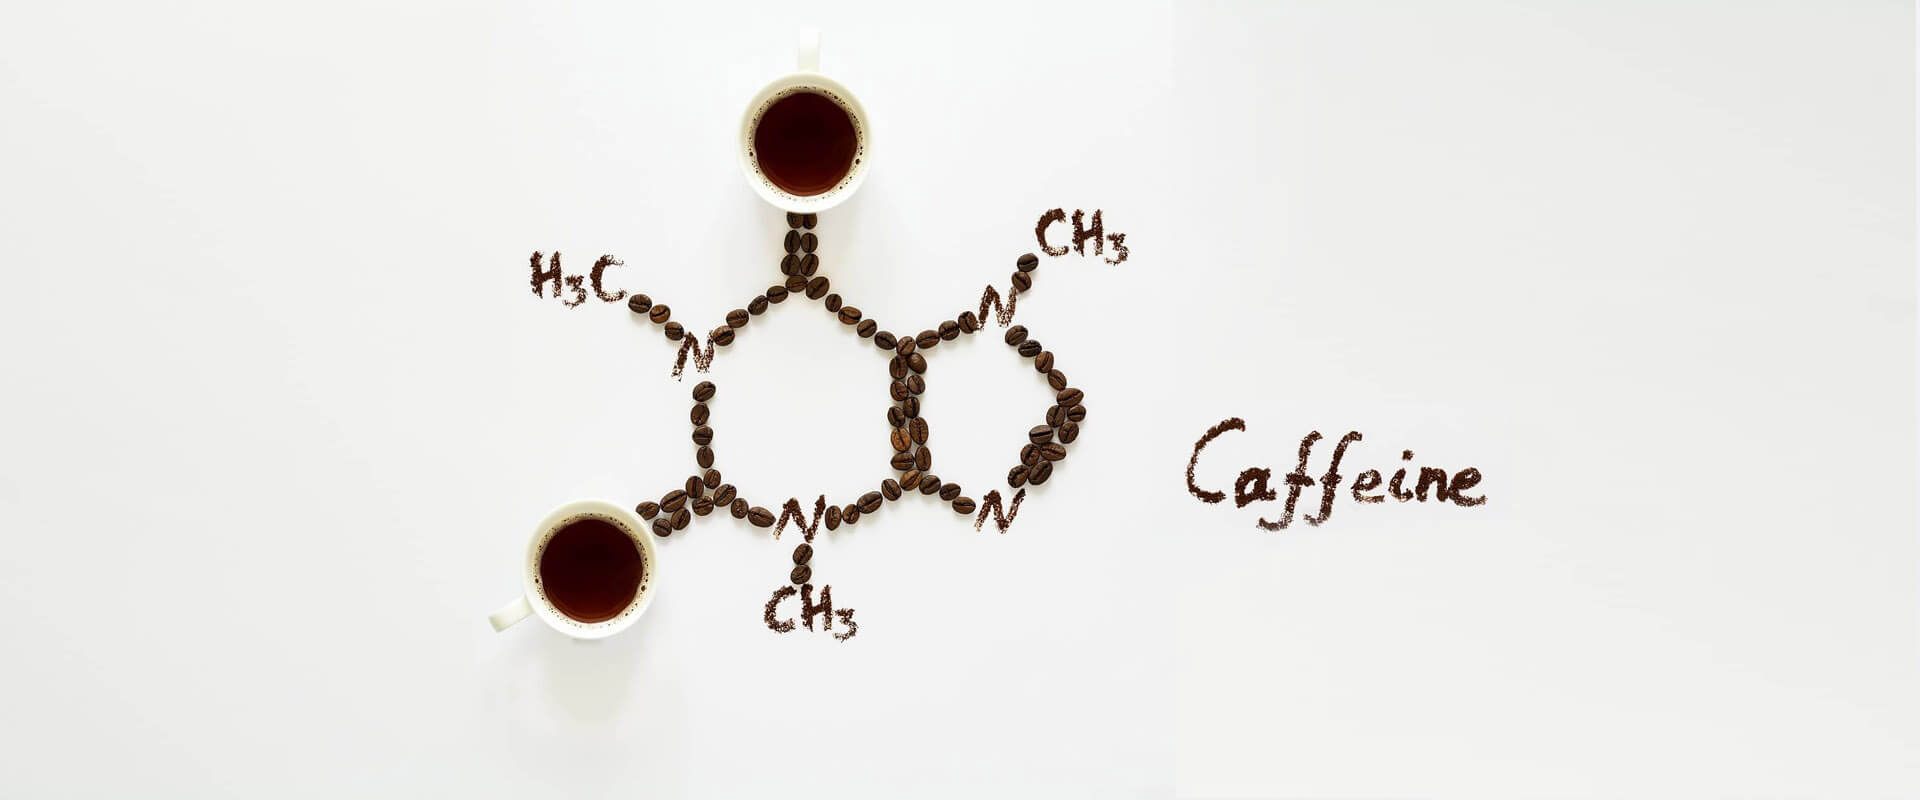 Koffeinsucht? Das sind unsere 5 Alternativen für Koffein